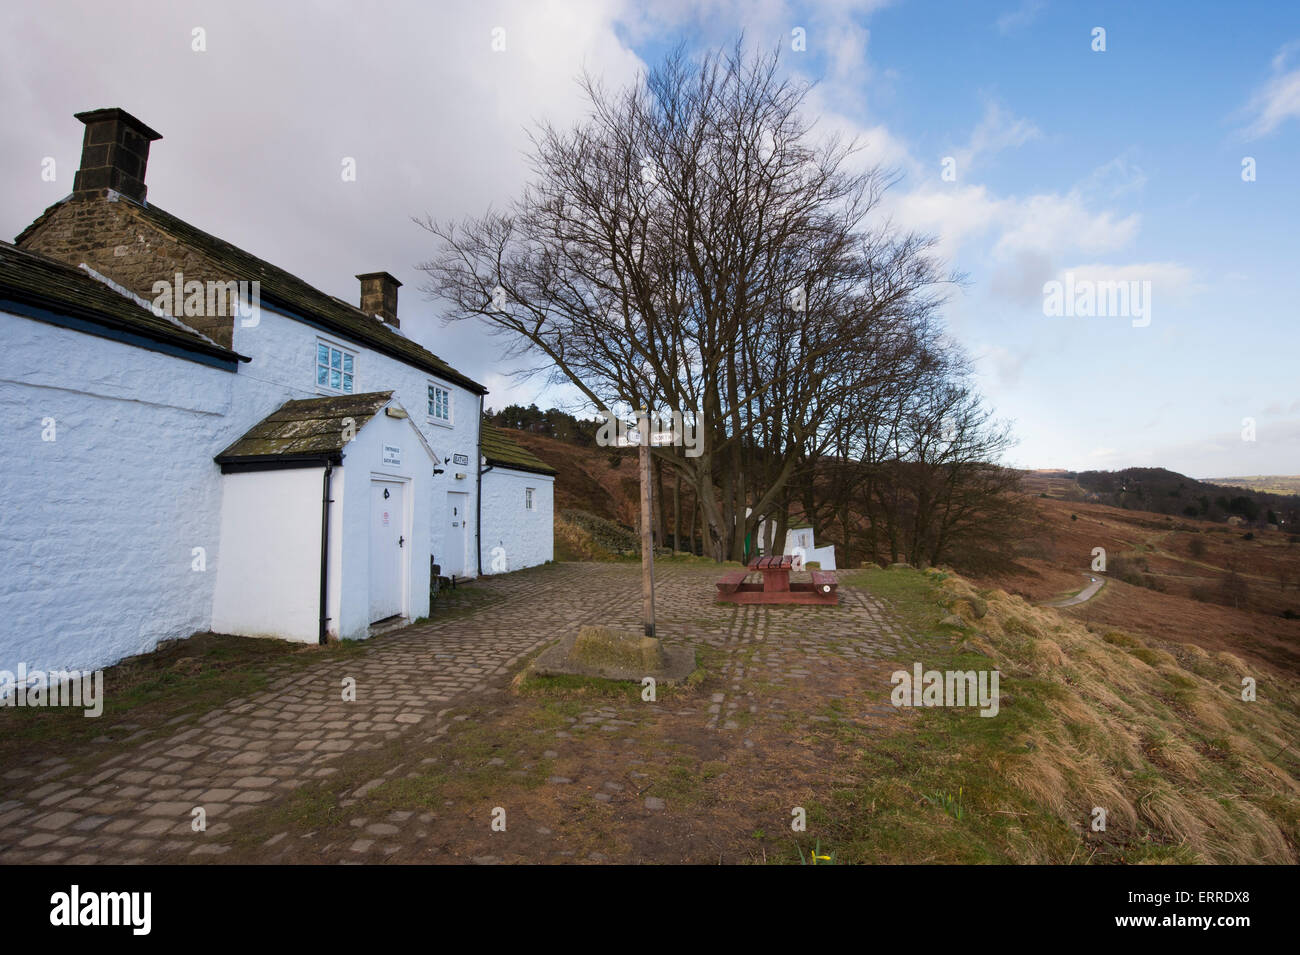 Sous ciel bleu, rustique, solitaires et isolés, White Wells Spa Cottage, est perché sur un flanc de pente - Ilkley Moor, West Yorkshire, Angleterre, Royaume-Uni. Banque D'Images